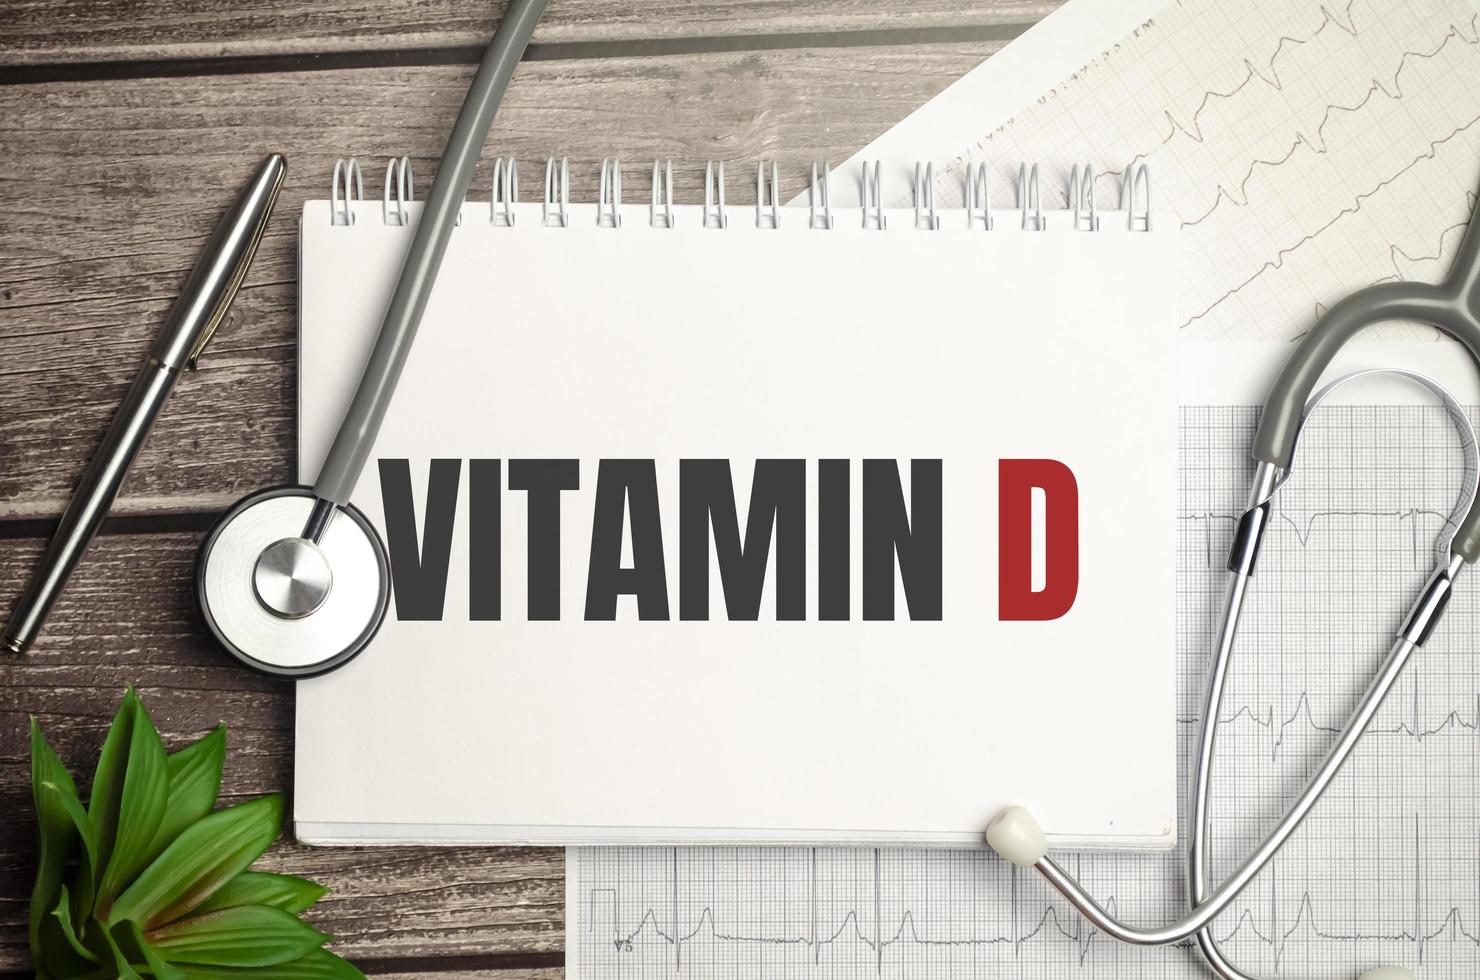 tekst vitamine d op notitieboekje met stethoscoop en pen op houten achtergrond foto